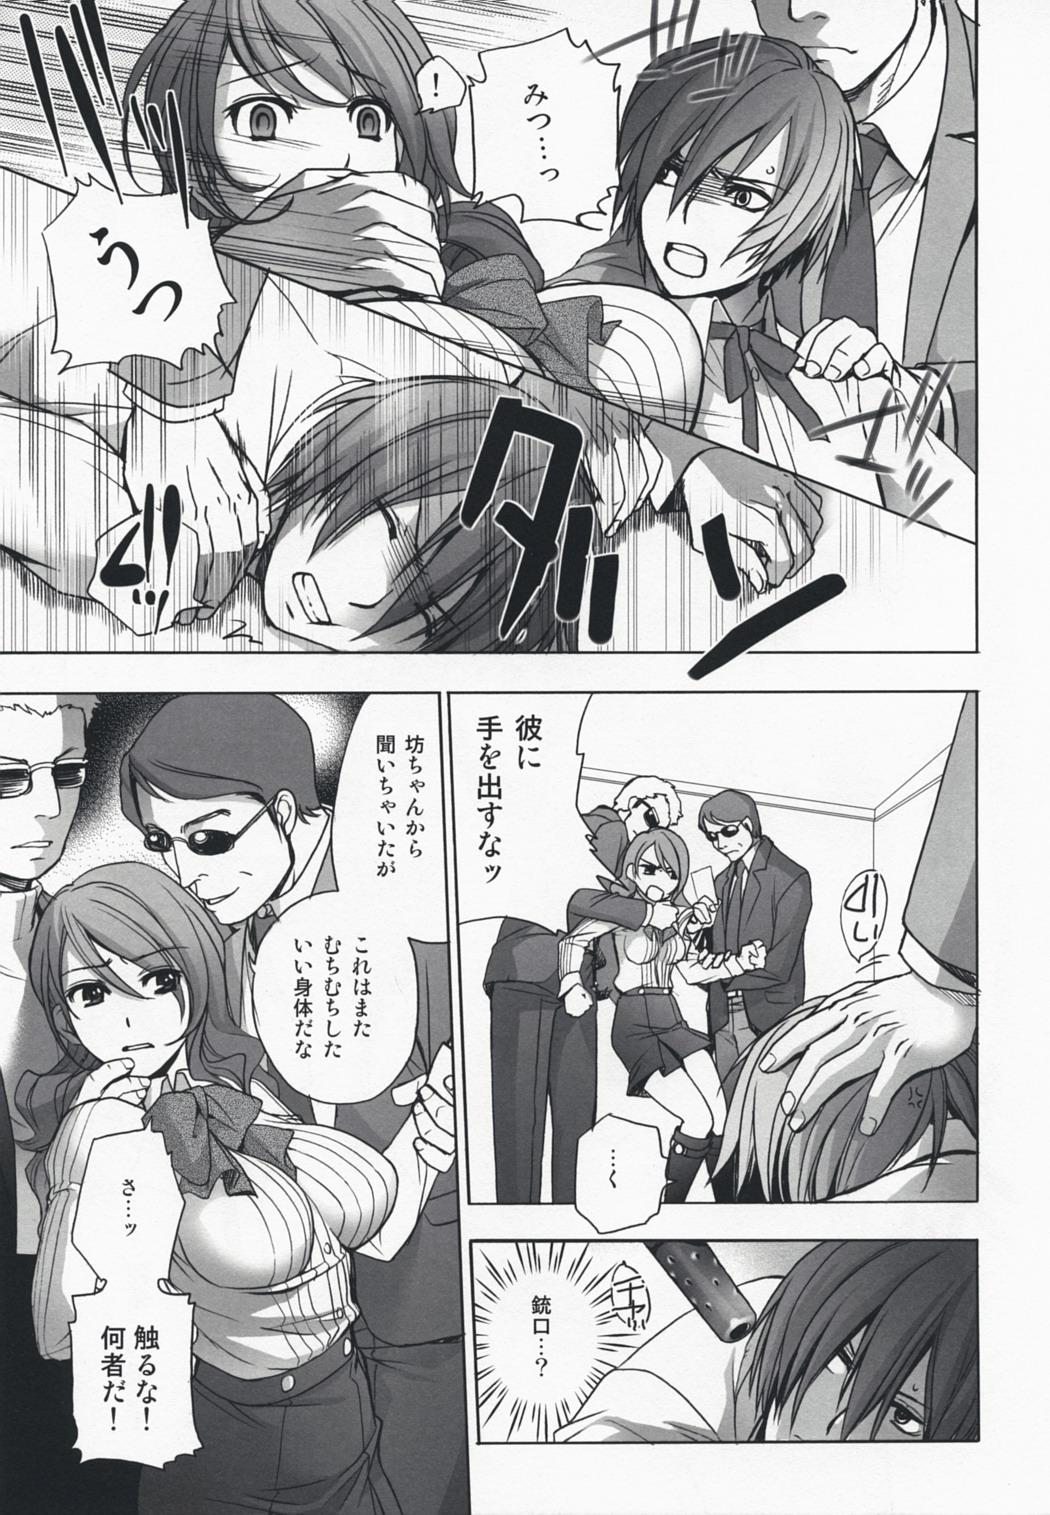 4some Kinjirareta Asobi - Persona 3 Dance - Page 8